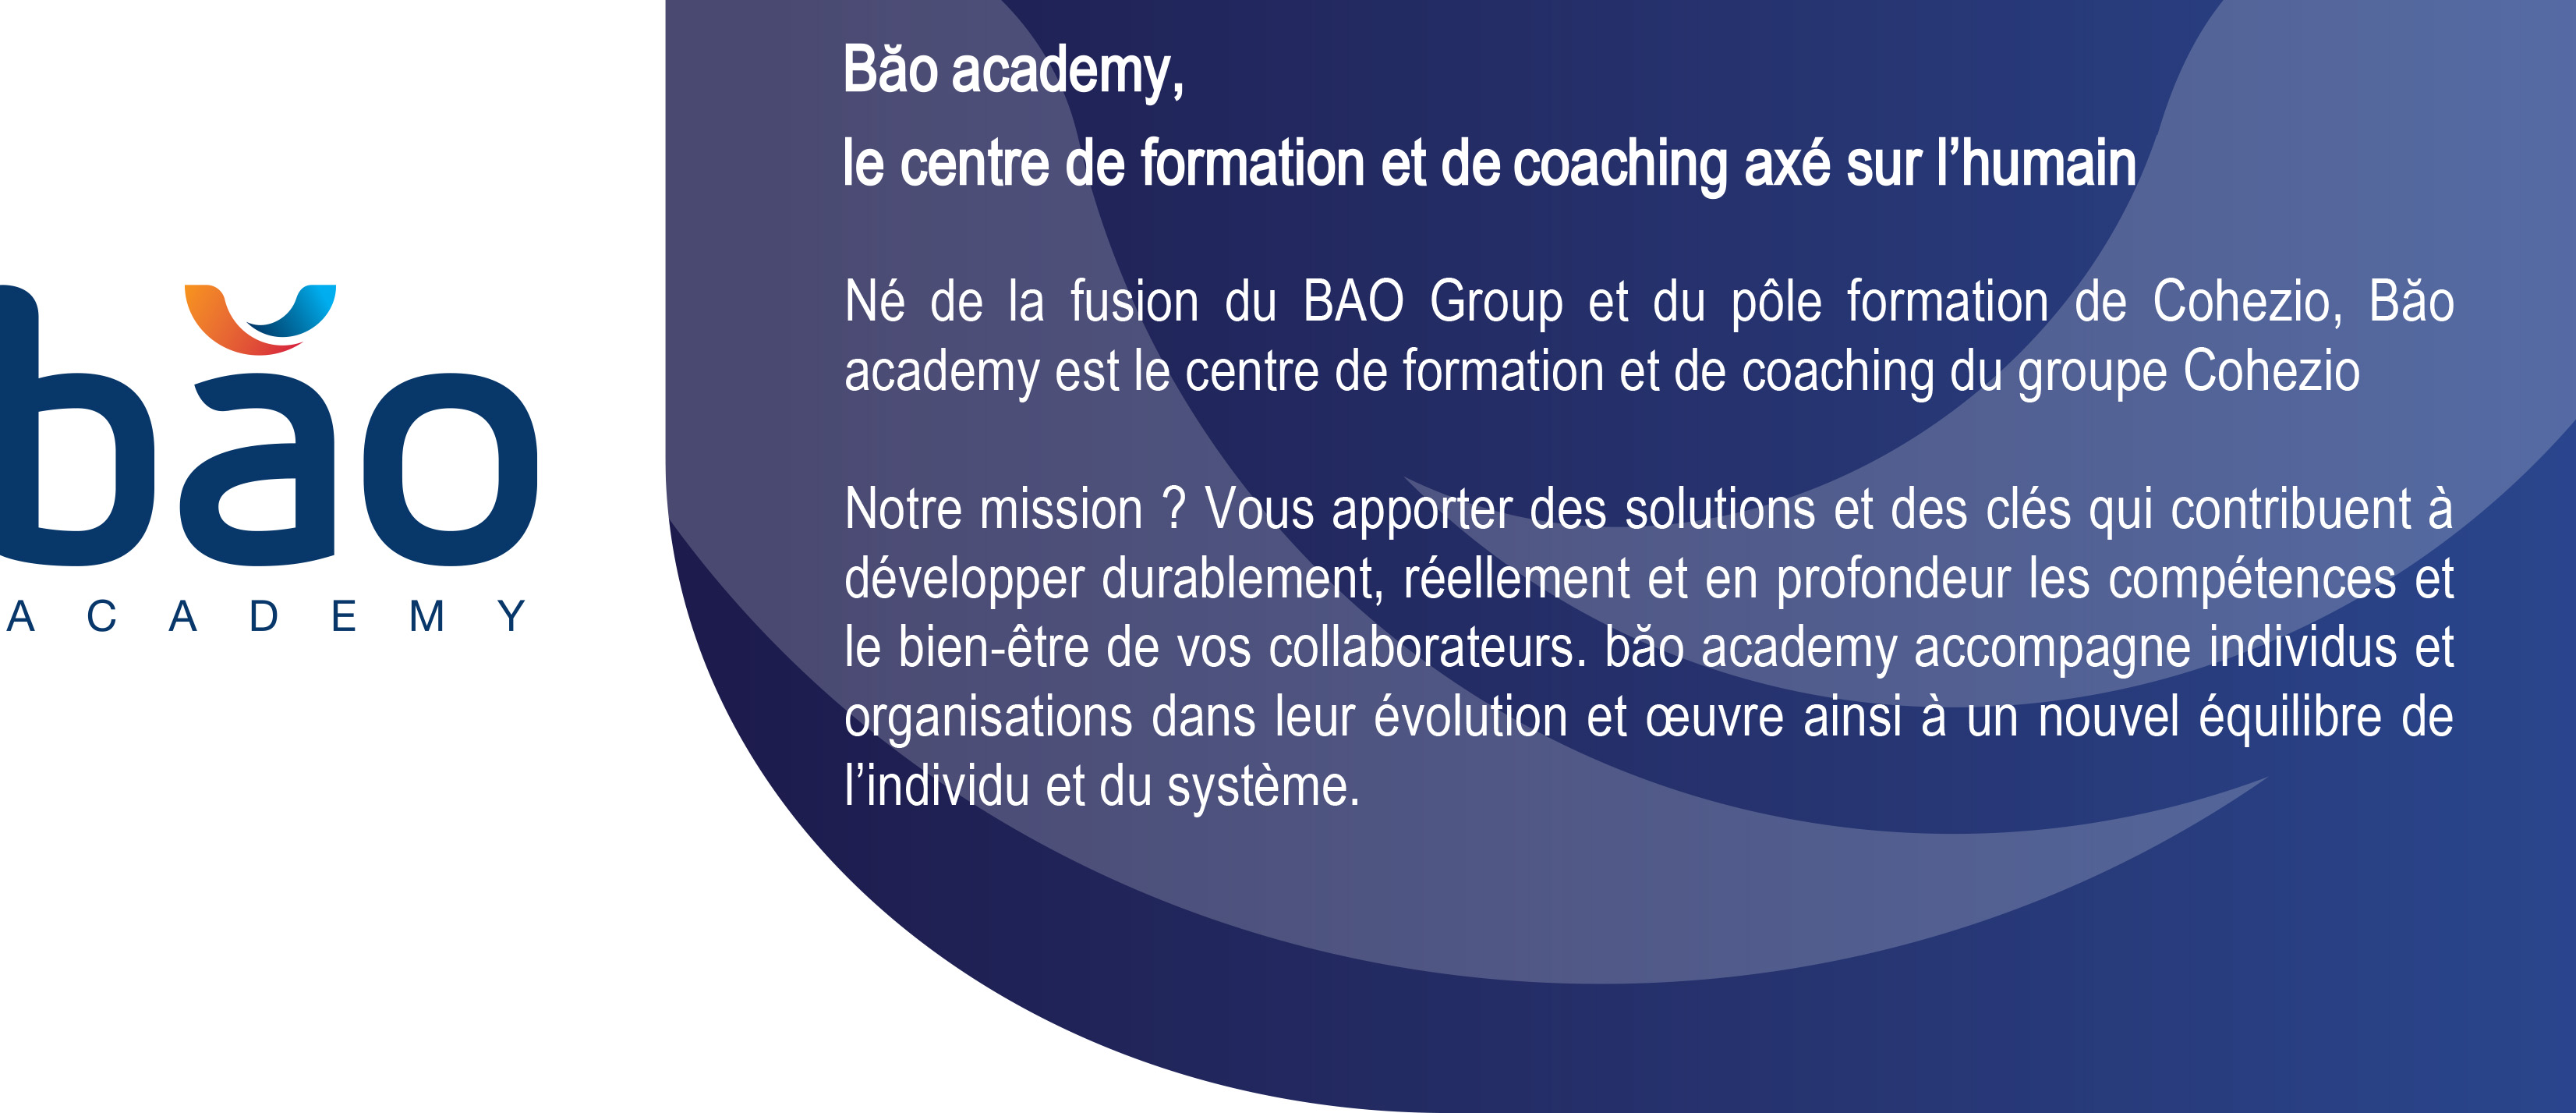 Bao academy centre de formation du groupe Cohezio